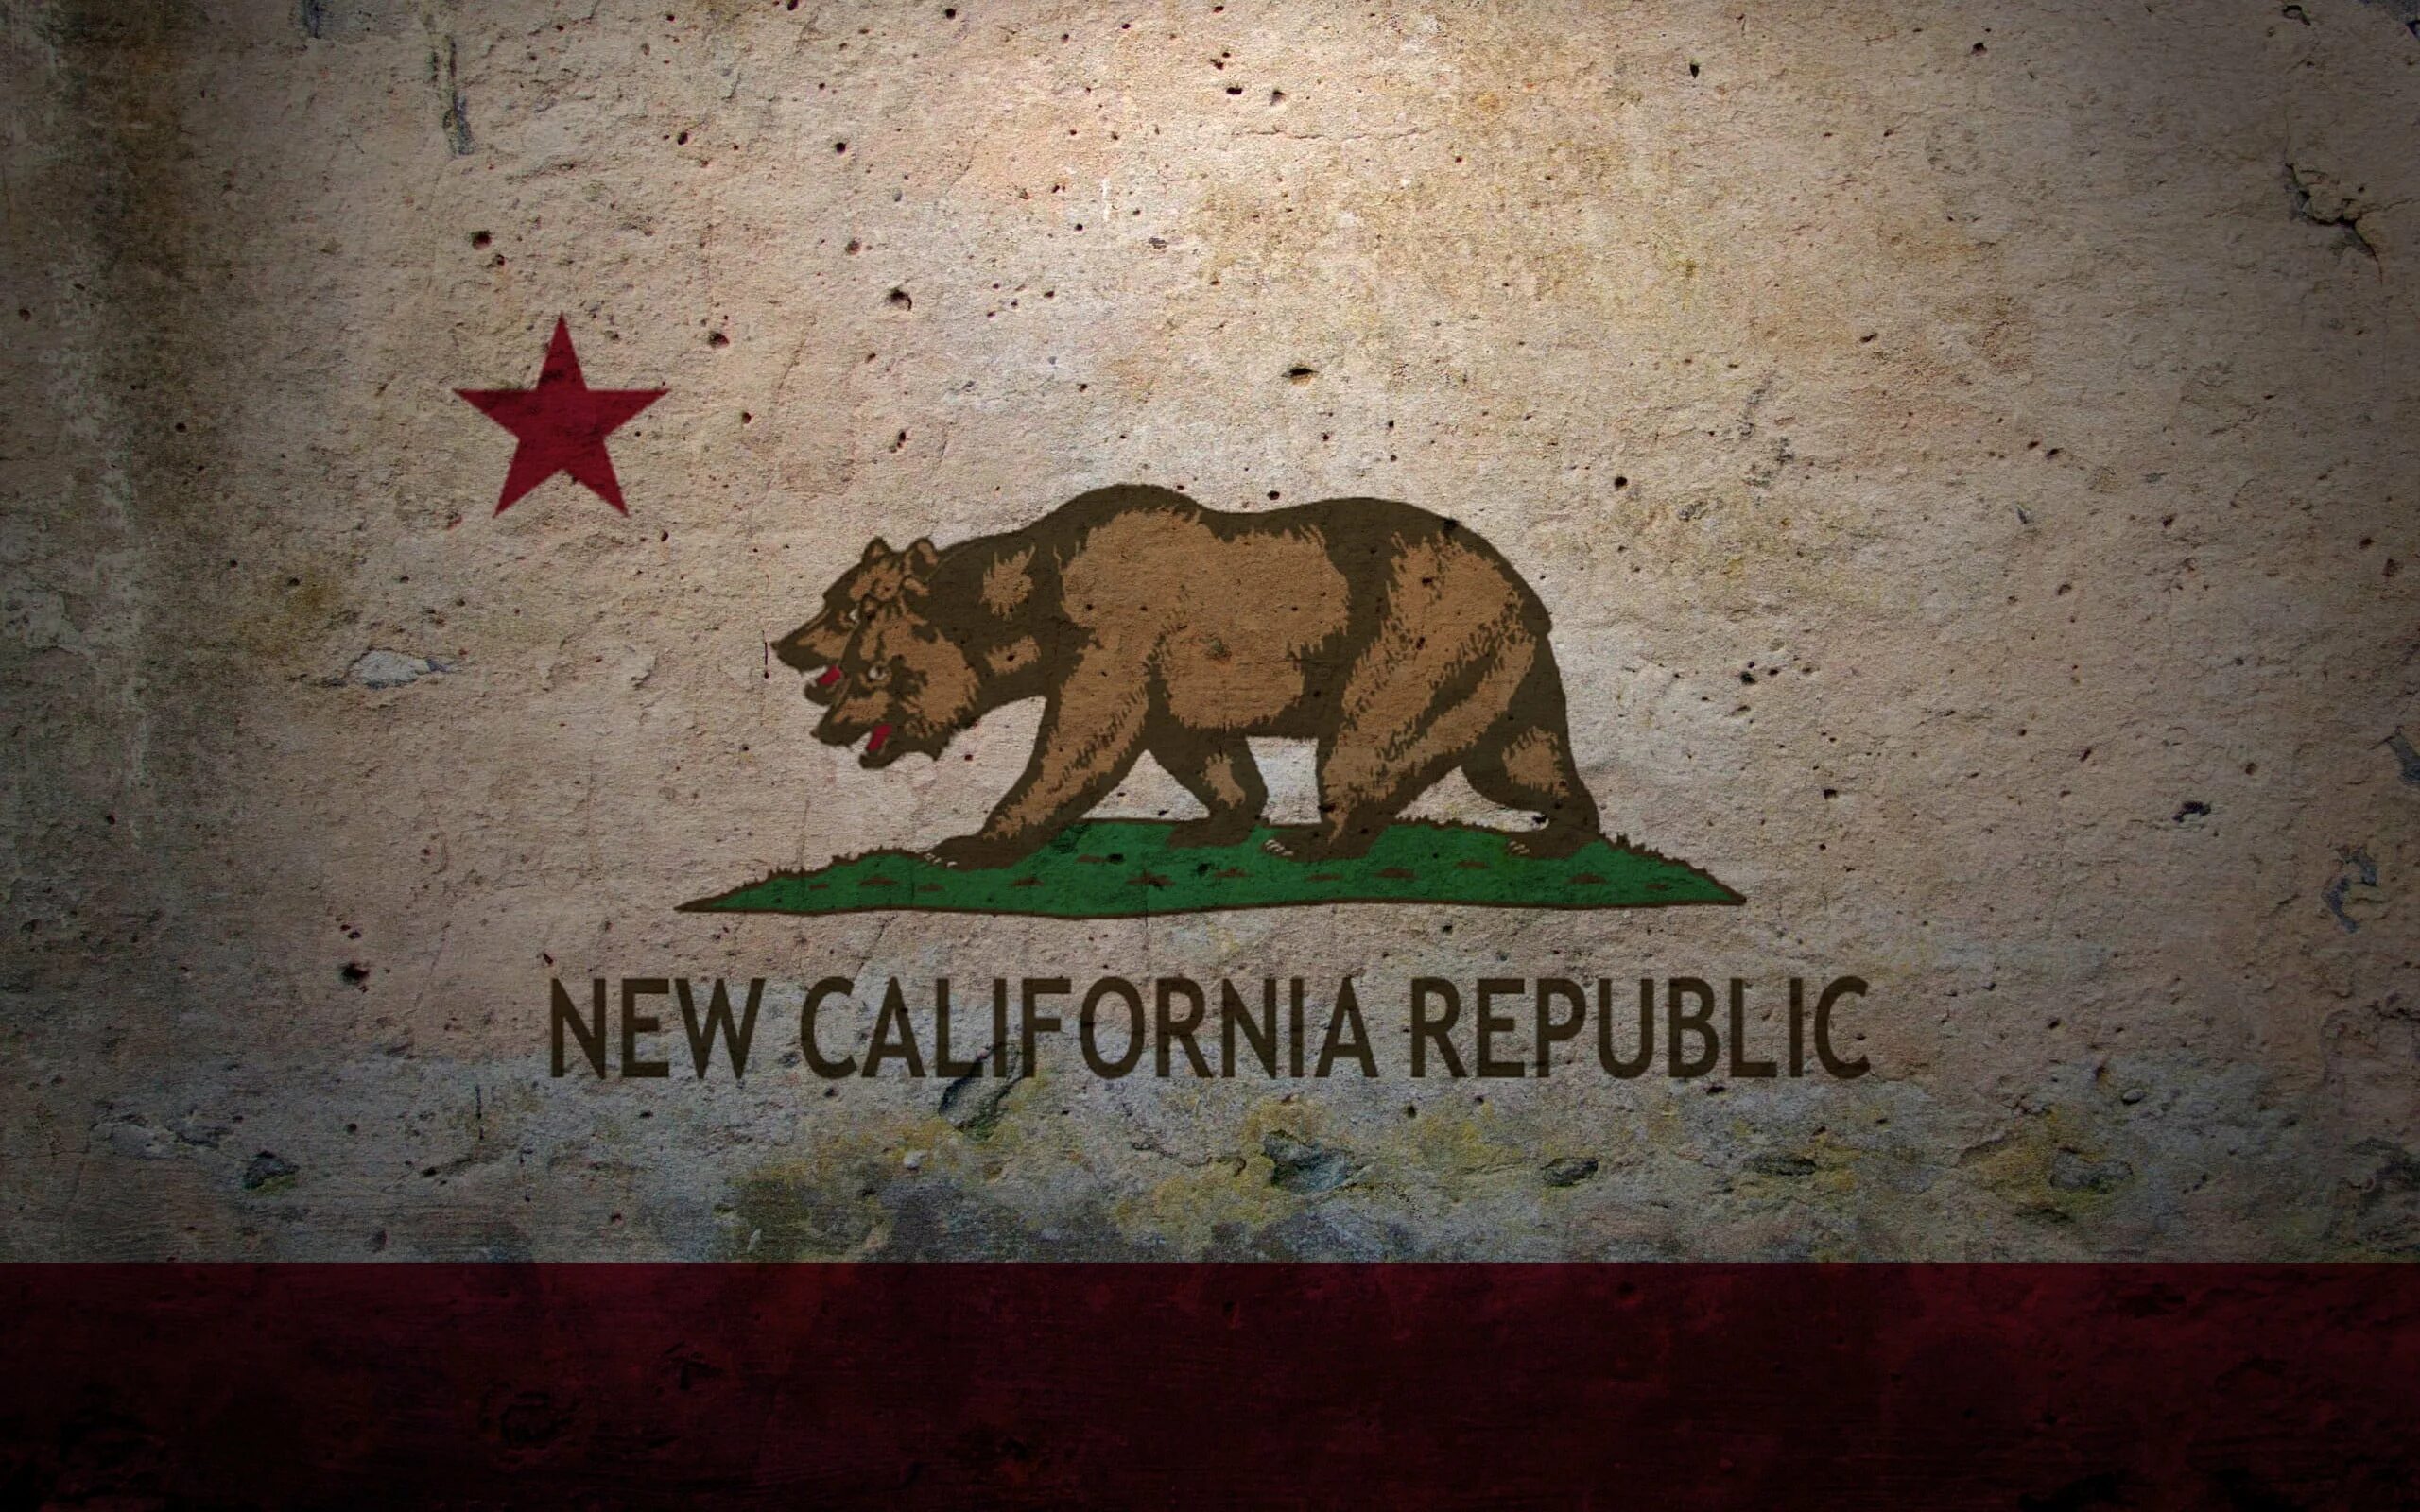 Новая калифорнийская республика fallout. Новая Калифорнийская Республика Fallout флаг. Фоллаут новая Калифорния флаг. Флаг Калифорнии Fallout. Калифорнийская Республика фоллаут.